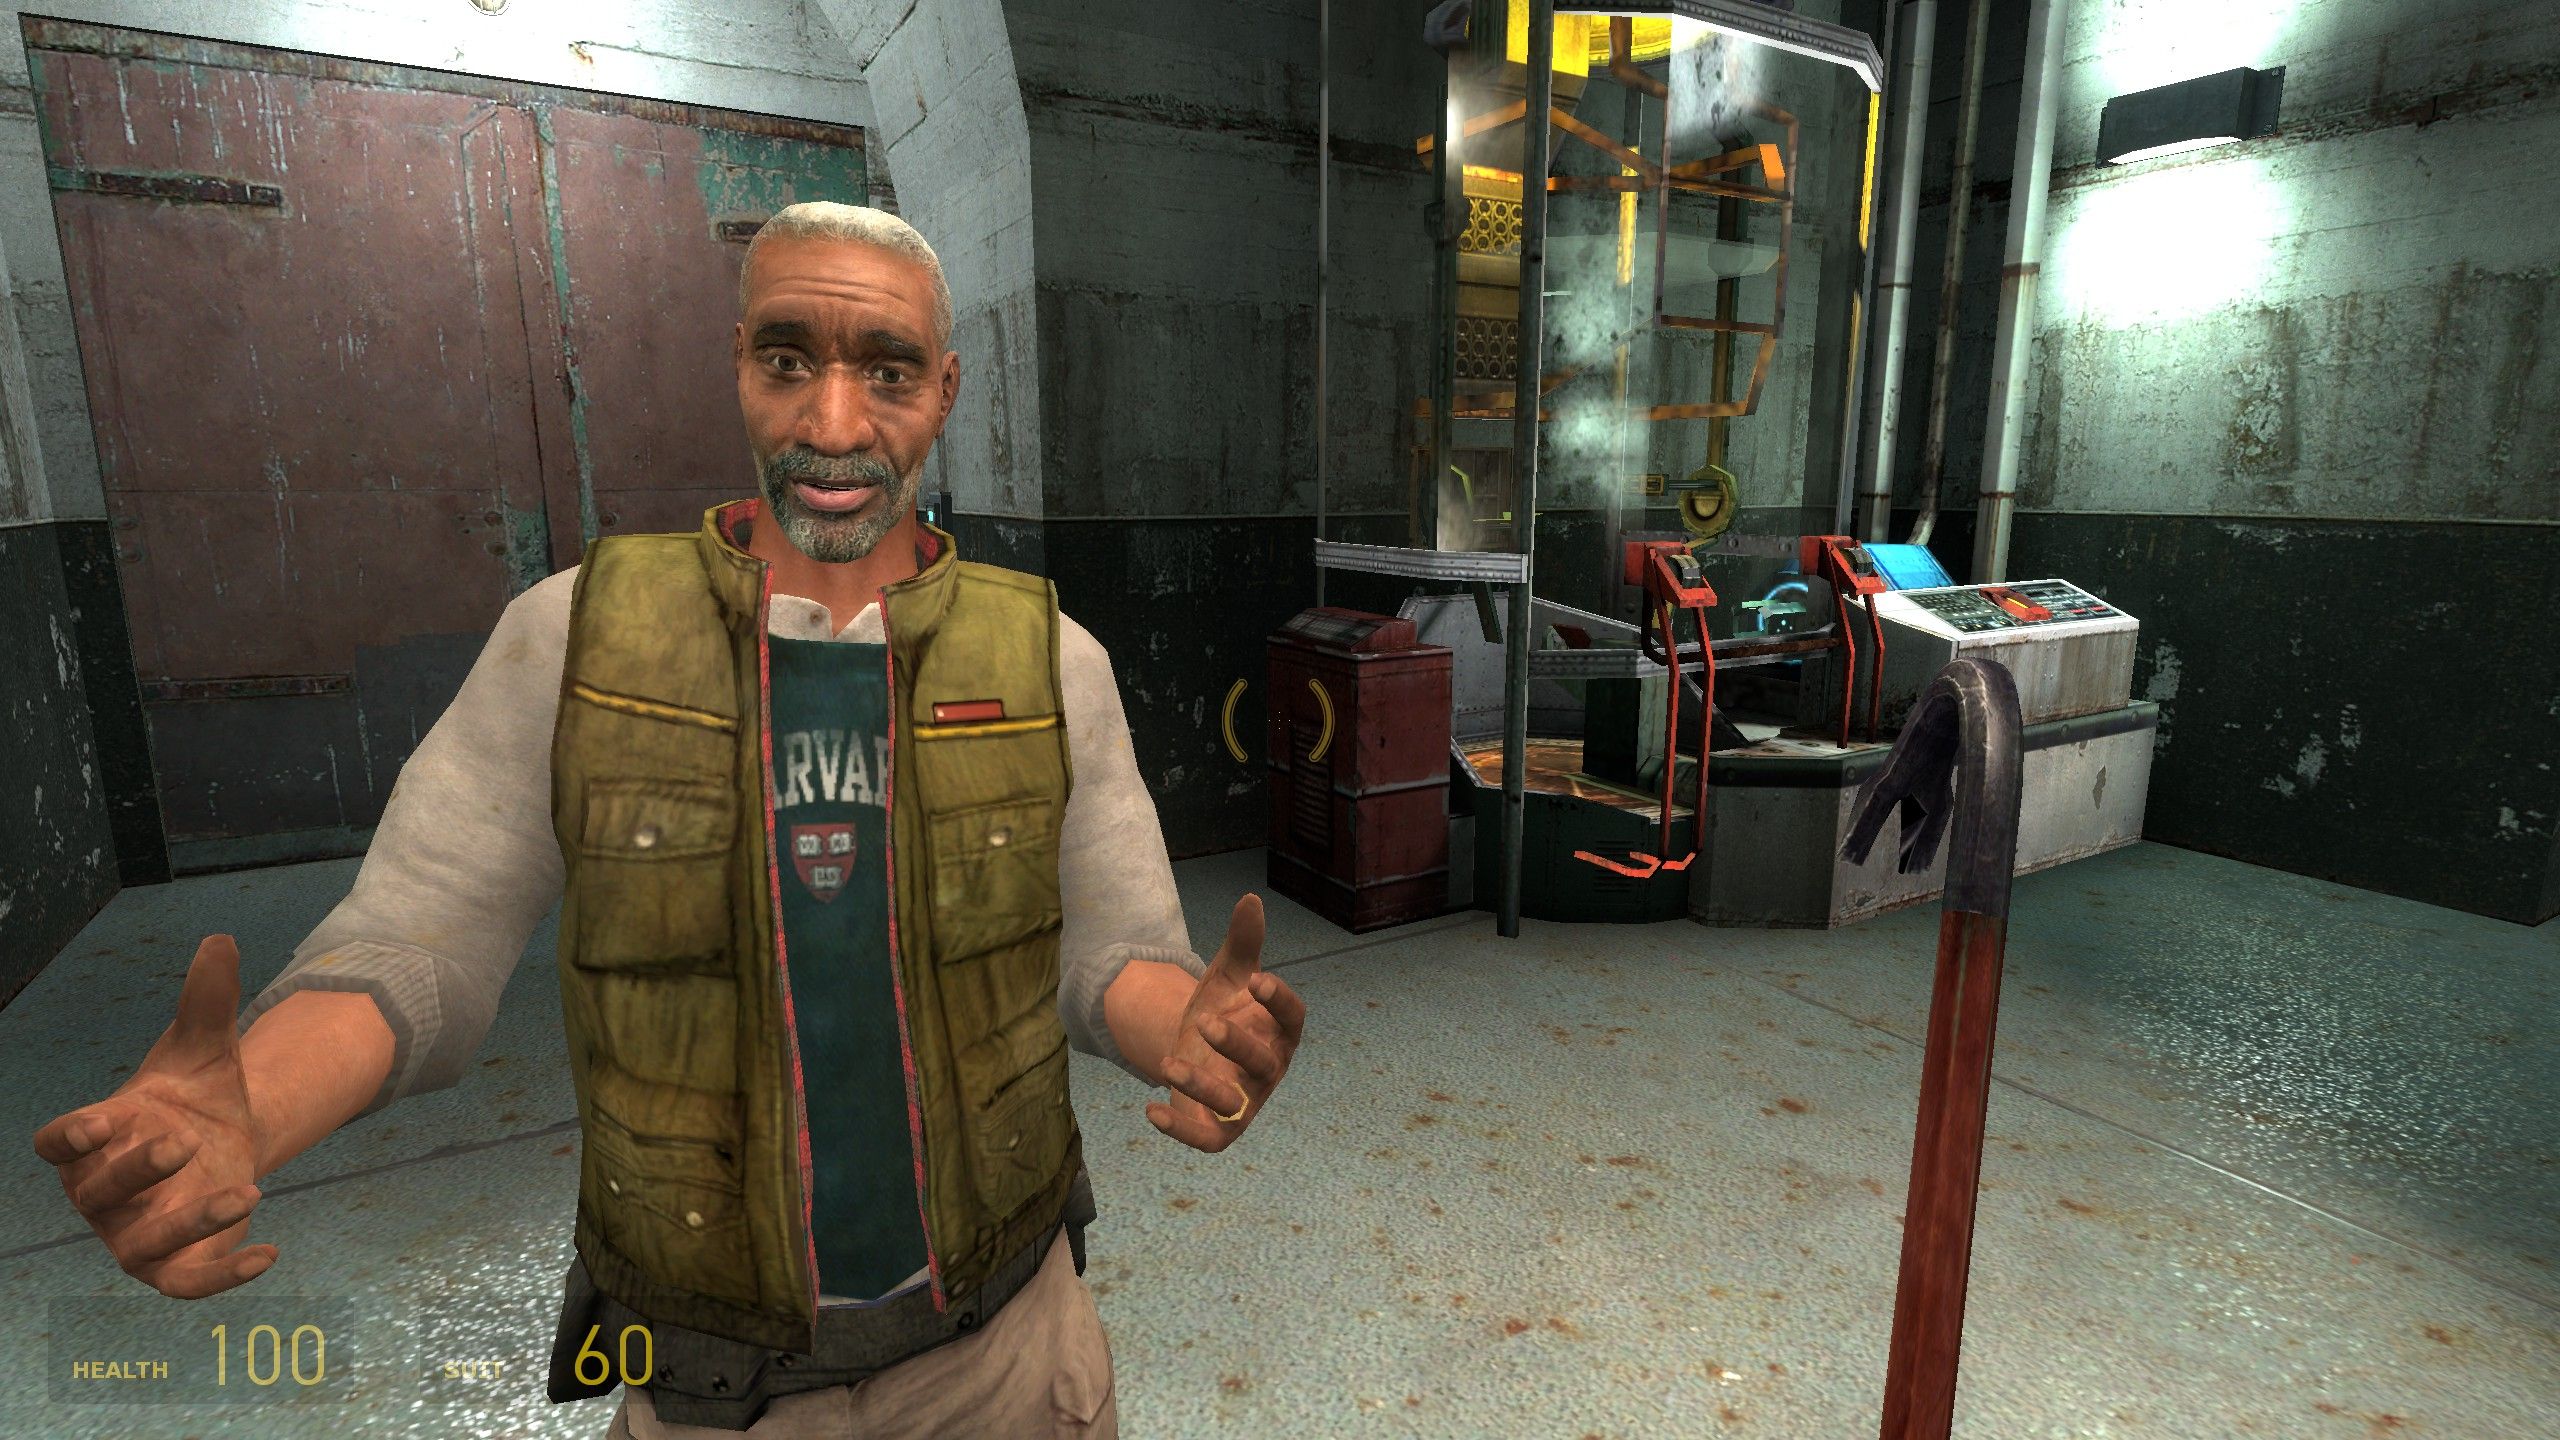 Eli Vance gestures with his hands in Half-Life 2